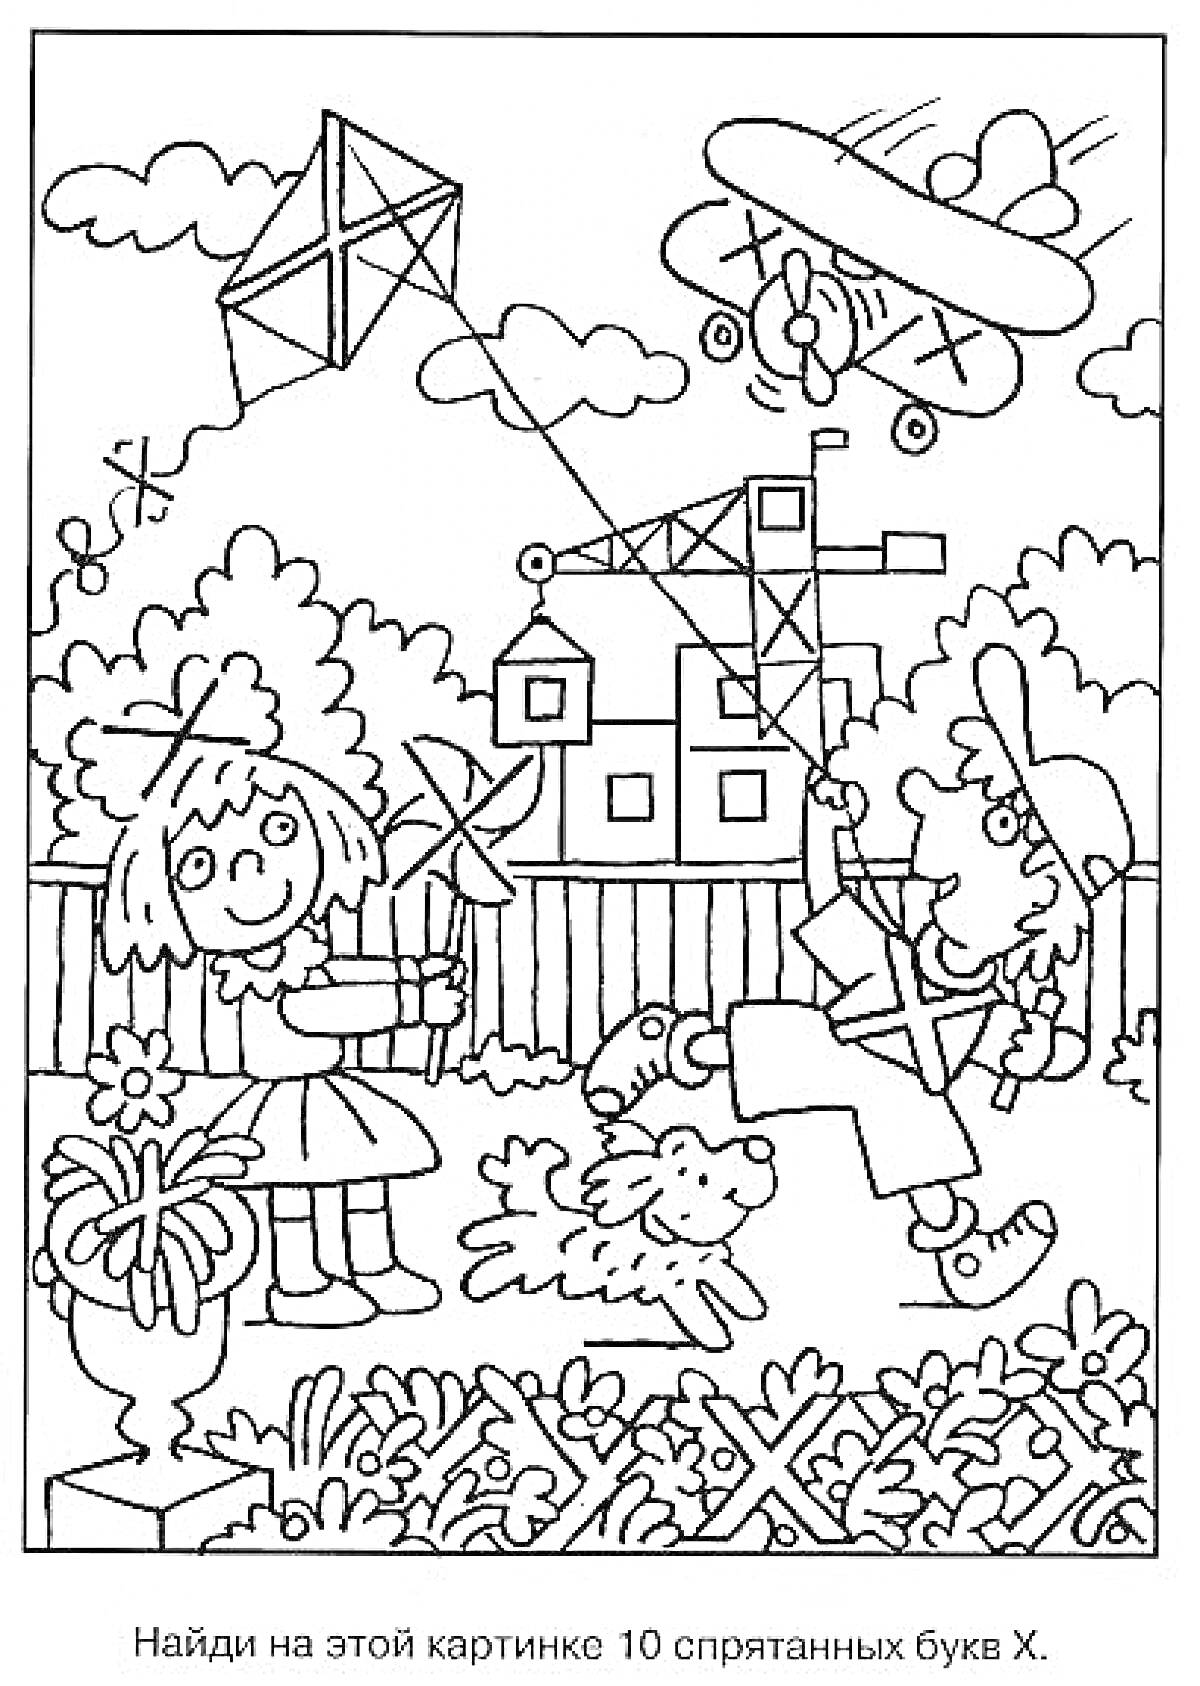 Искалка с буквами Х, мальчик с воздушным змеем, девочка с вертушкой, собака, самолёт, строительный кран, цветы, забор